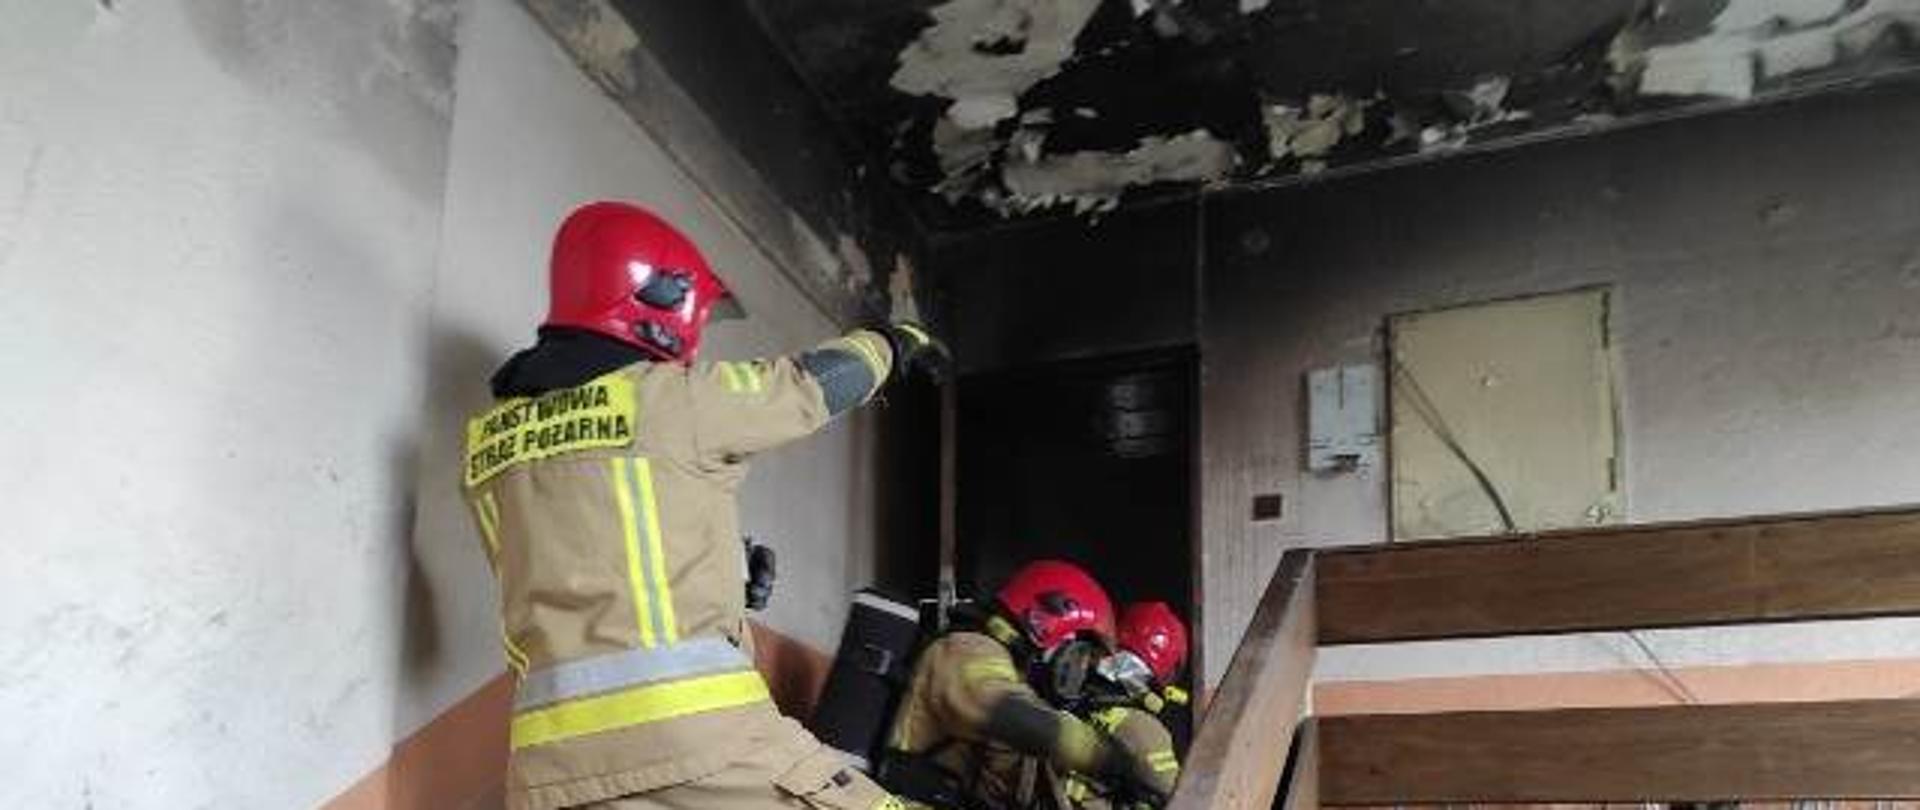 Doskonalenie zawodowe z zakresu gaszenia pożarów wewnętrznych.